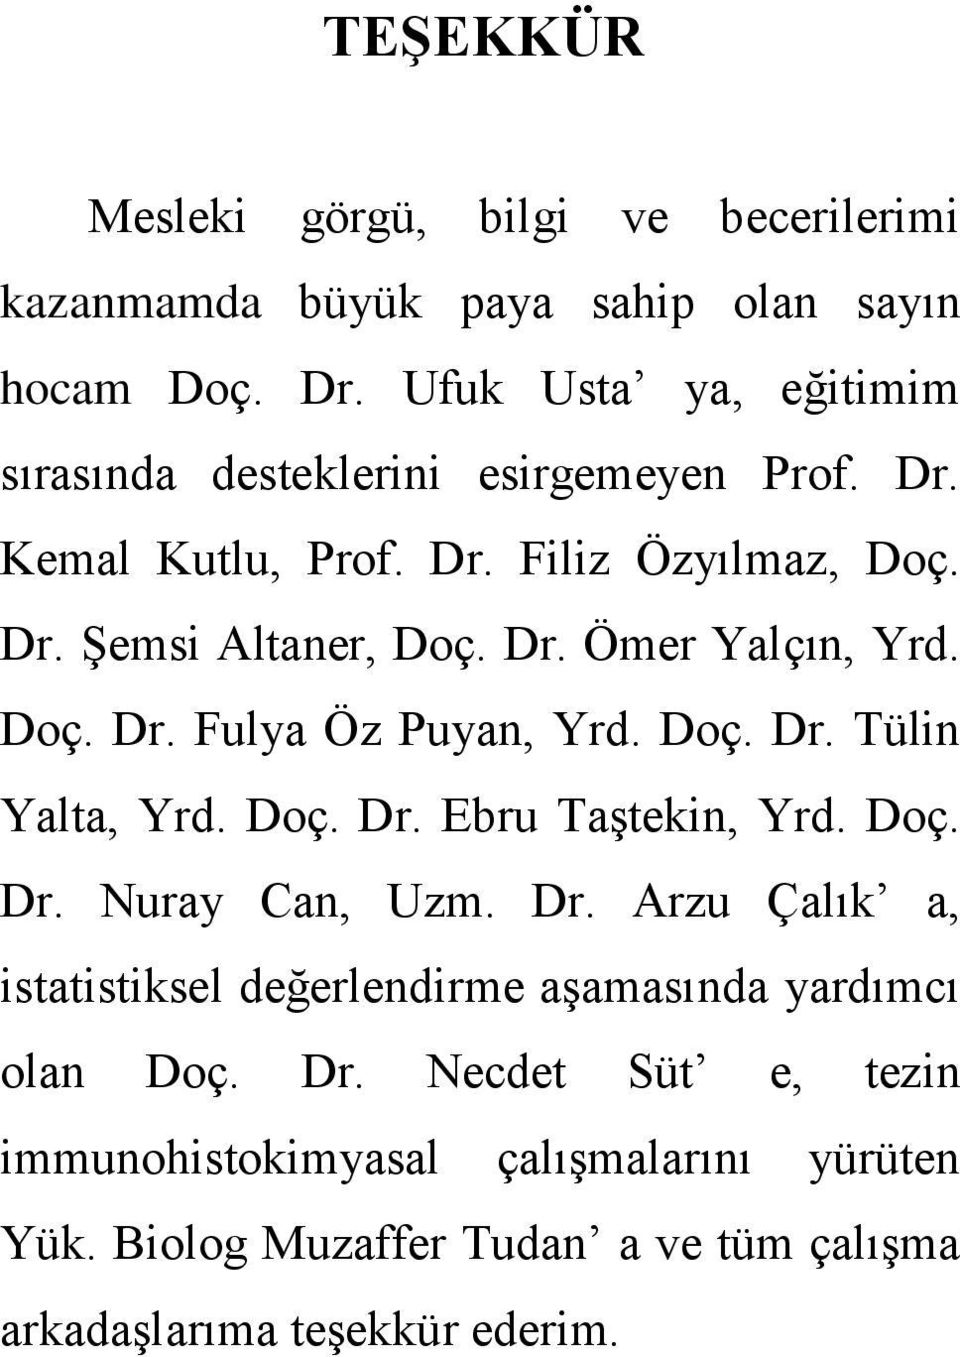 Doç. Dr. Fulya Öz Puyan, Yrd. Doç. Dr. Tülin Yalta, Yrd. Doç. Dr. Ebru Taştekin, Yrd. Doç. Dr. Nuray Can, Uzm. Dr. Arzu Çalık a, istatistiksel değerlendirme aşamasında yardımcı olan Doç.